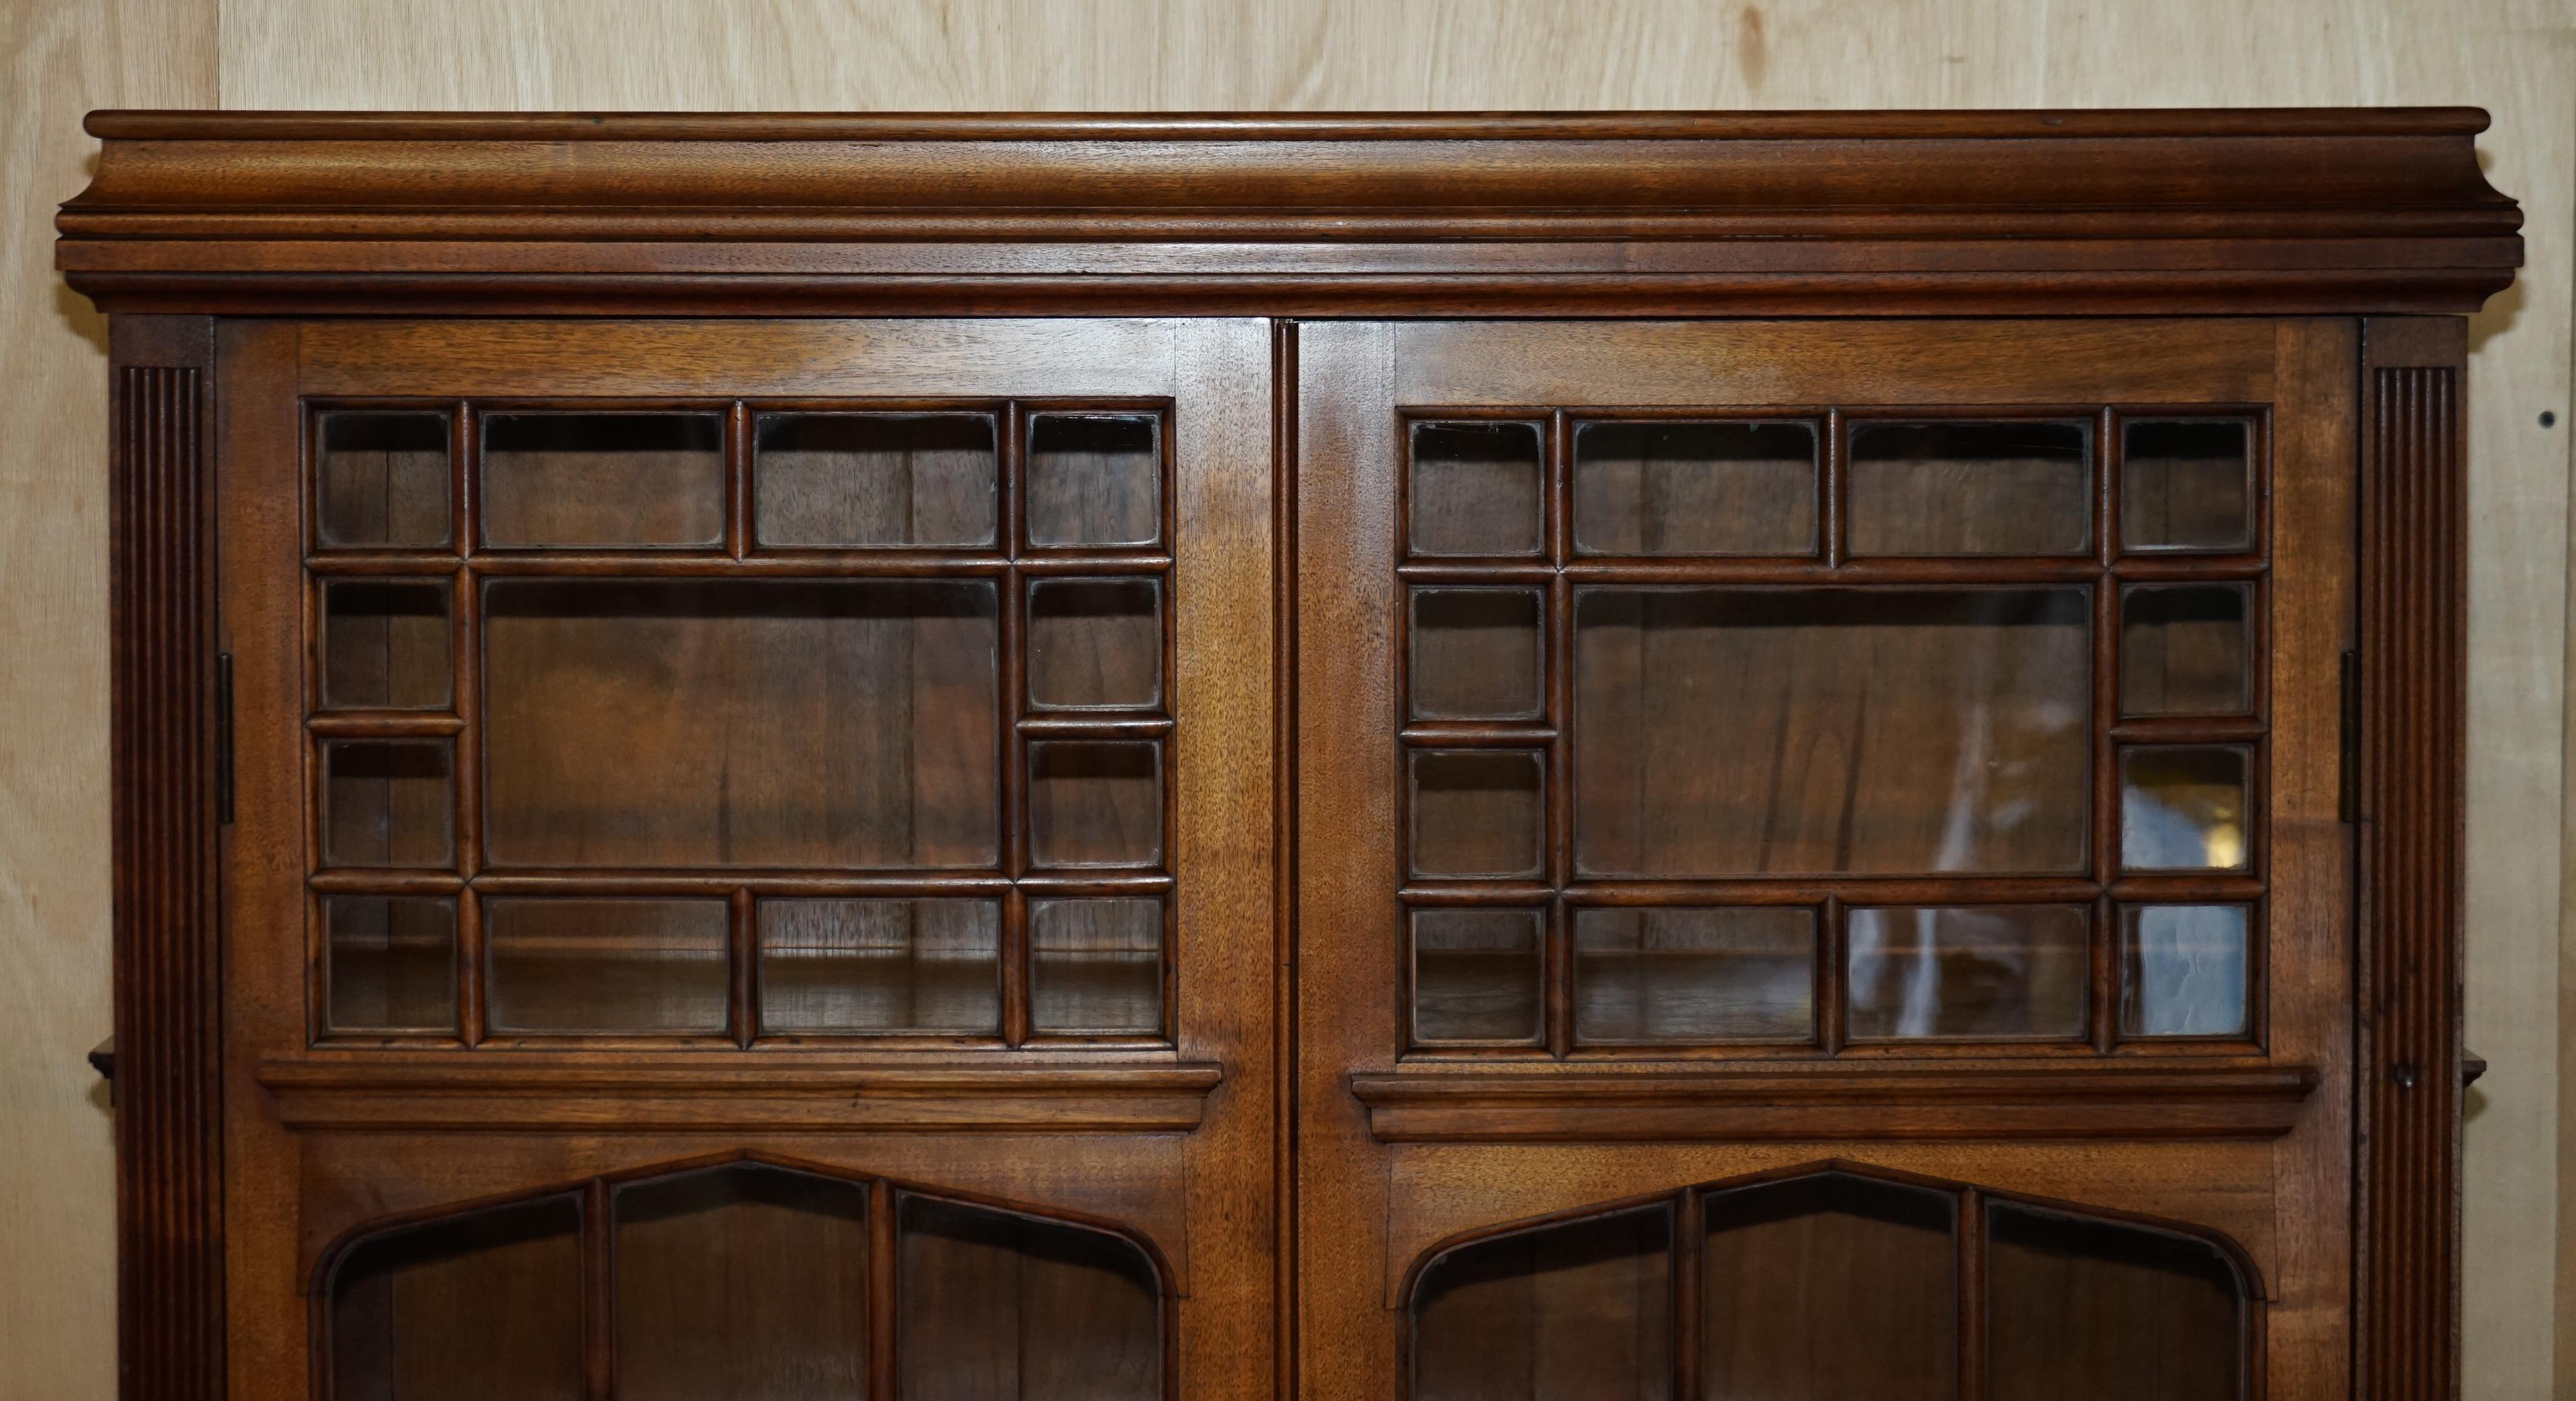 Wir sind erfreut, dieses schöne James Jas Shoolbred, voll gestempelt, astral glasiert antiken Bibliothek Bücherregal zum Verkauf anbieten.

Ein sehr gut aussehendes und dekoratives Stück. Jas Shoolbred stellte einige der besten englischen Möbel